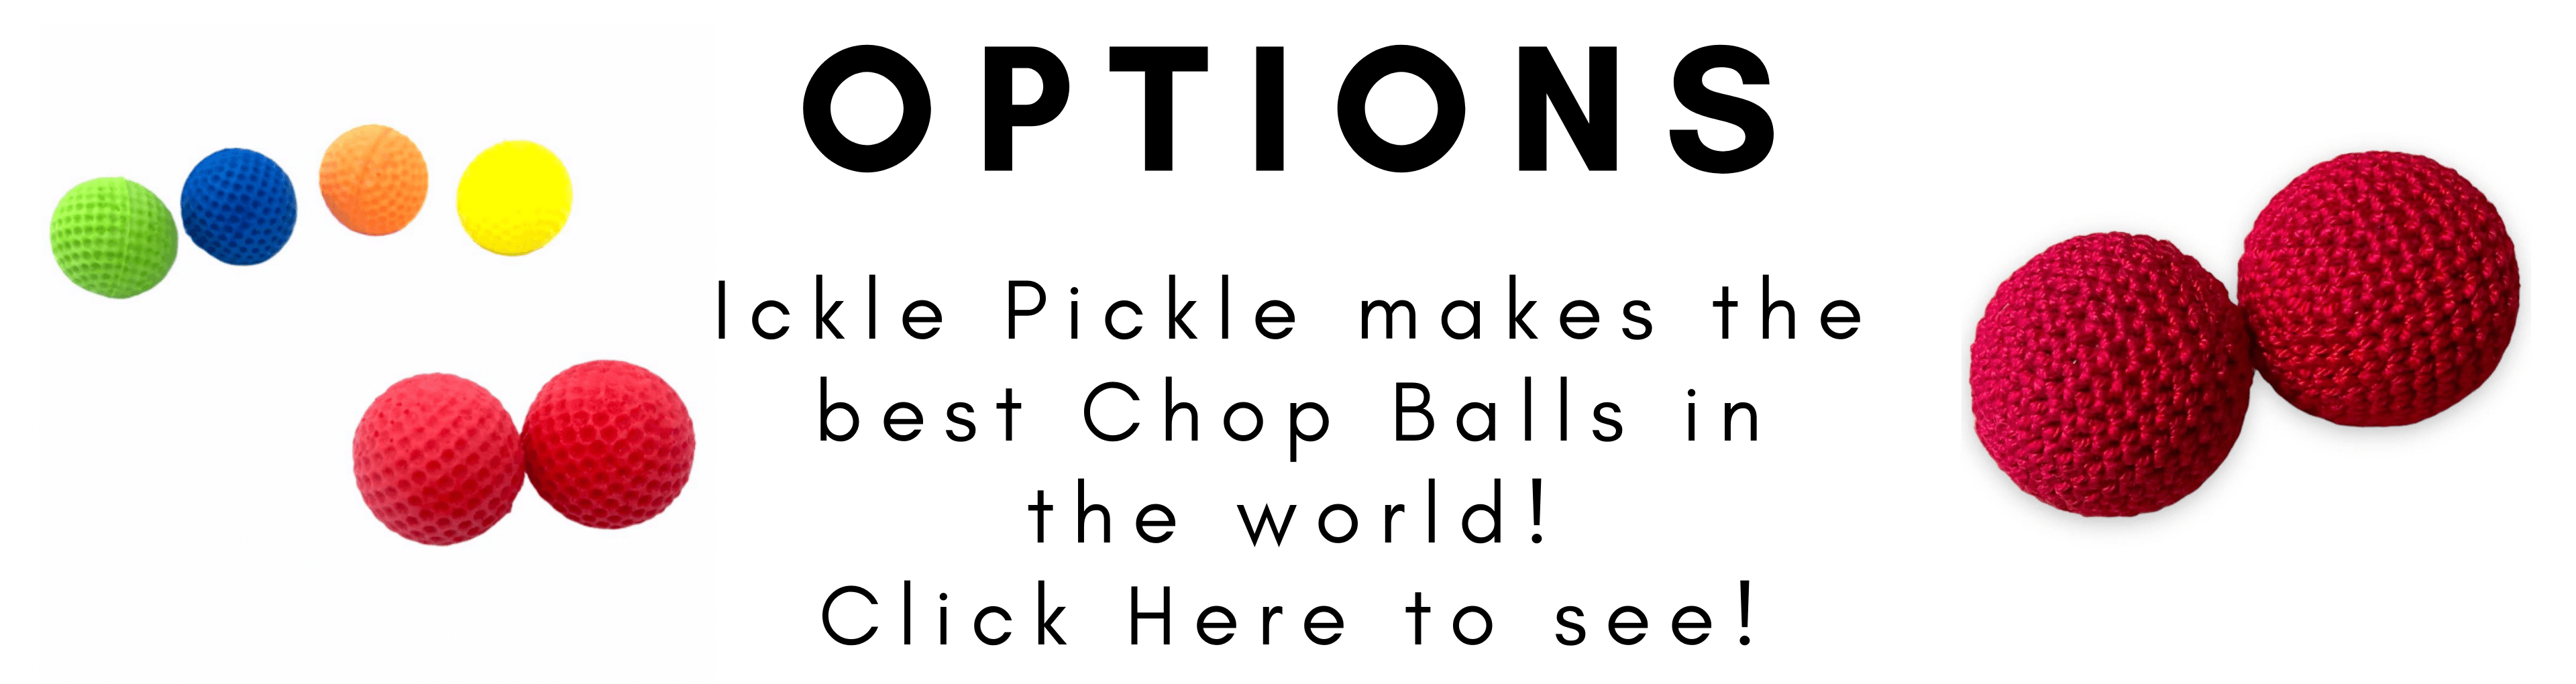 Chop Balls